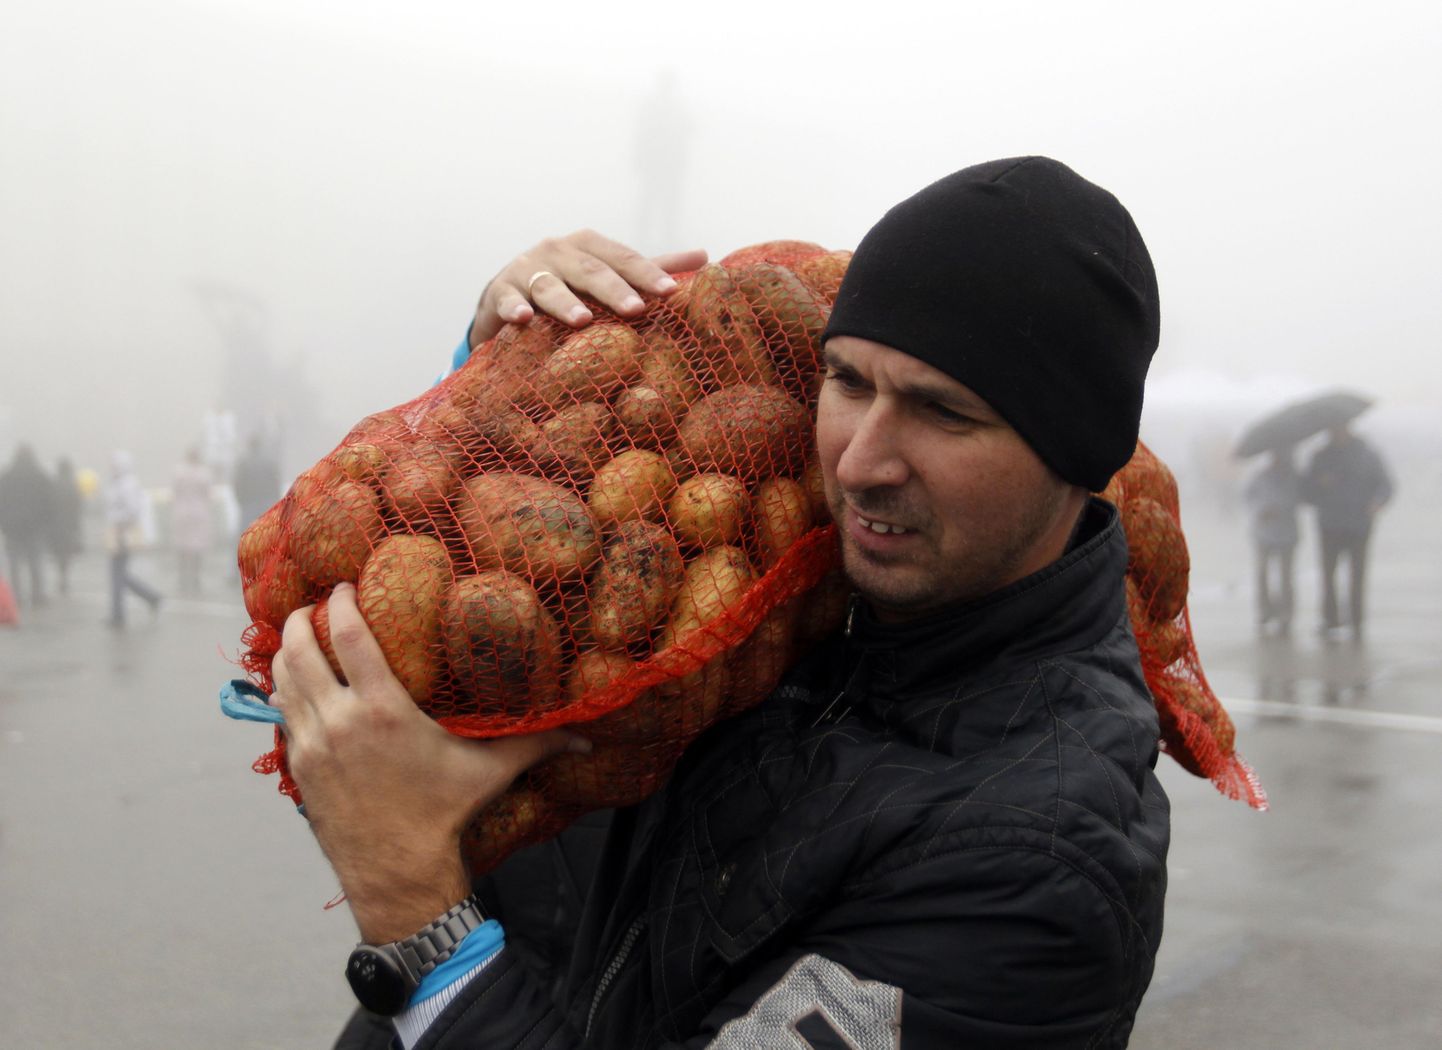 Vene põllumees kartulikotiga. Foto on illustratiivne.